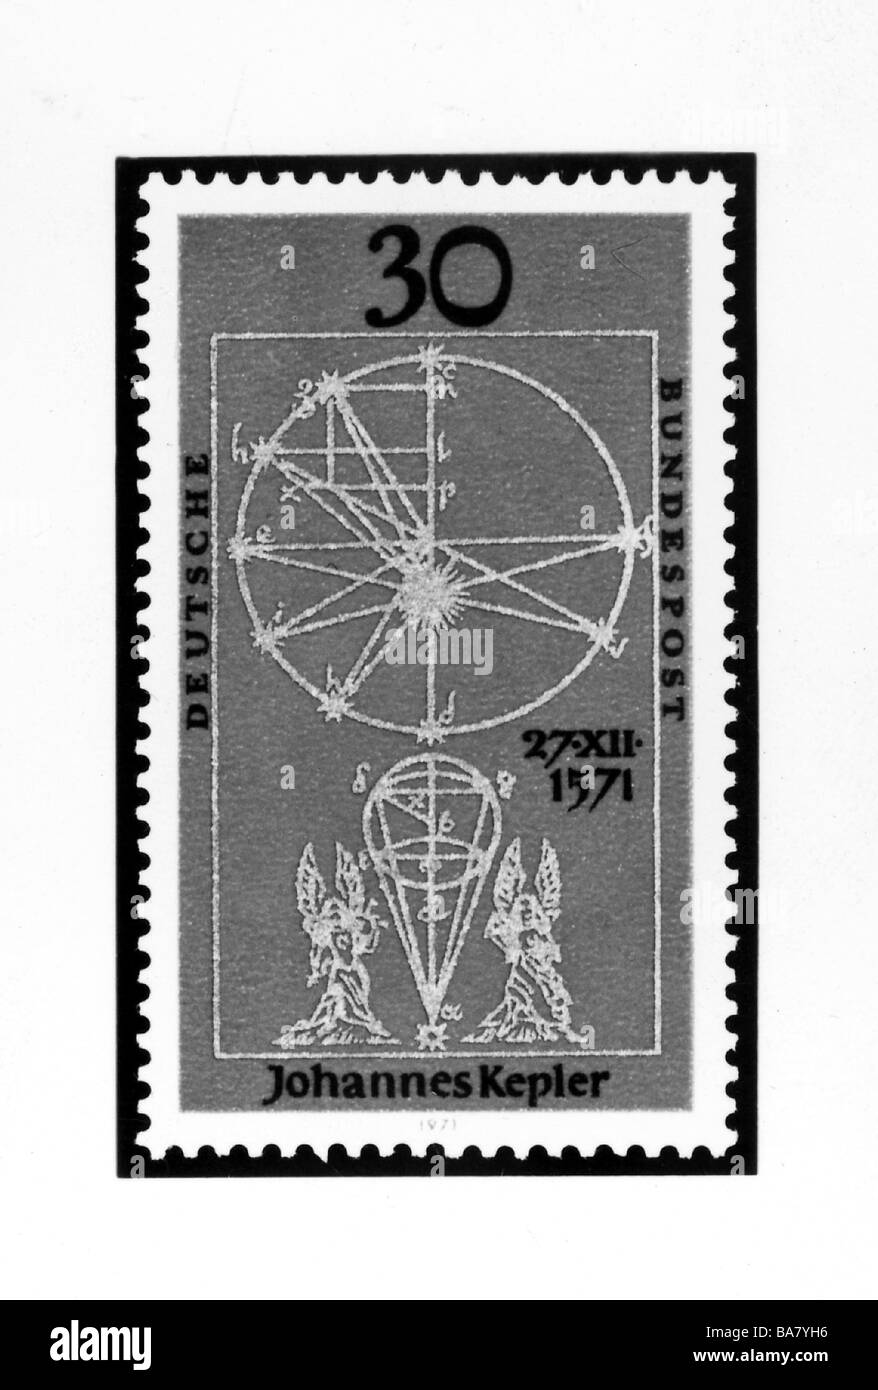 Kepler, Johannes, 27.12.1571 - 15.11.1630, deutscher Astronom, 30 Pfennig Stempel mit Illustrationen aus seinem Werk "Astronomia Nova" von 1609, wahrscheinlich 1971, Stockfoto